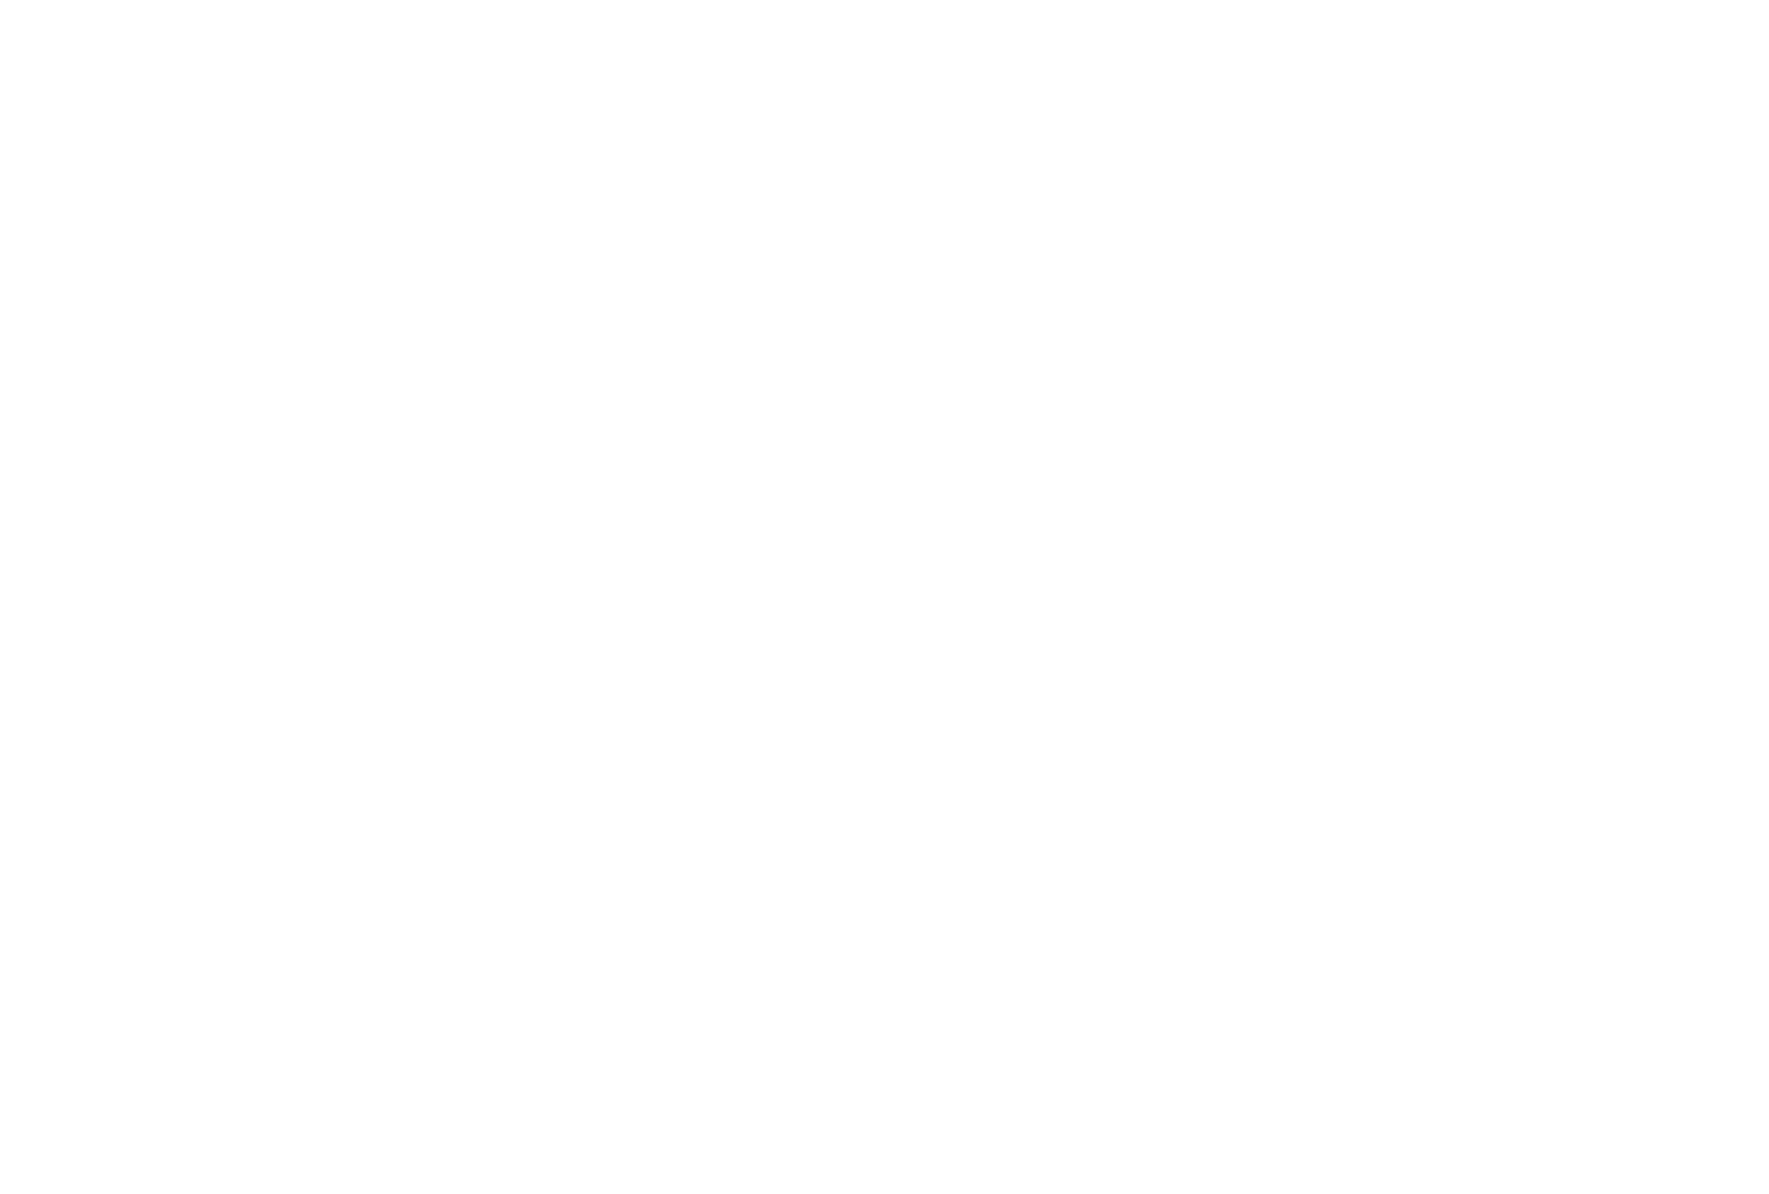 i8.amplience.net/i/jpl/jd_505524_a?v=1